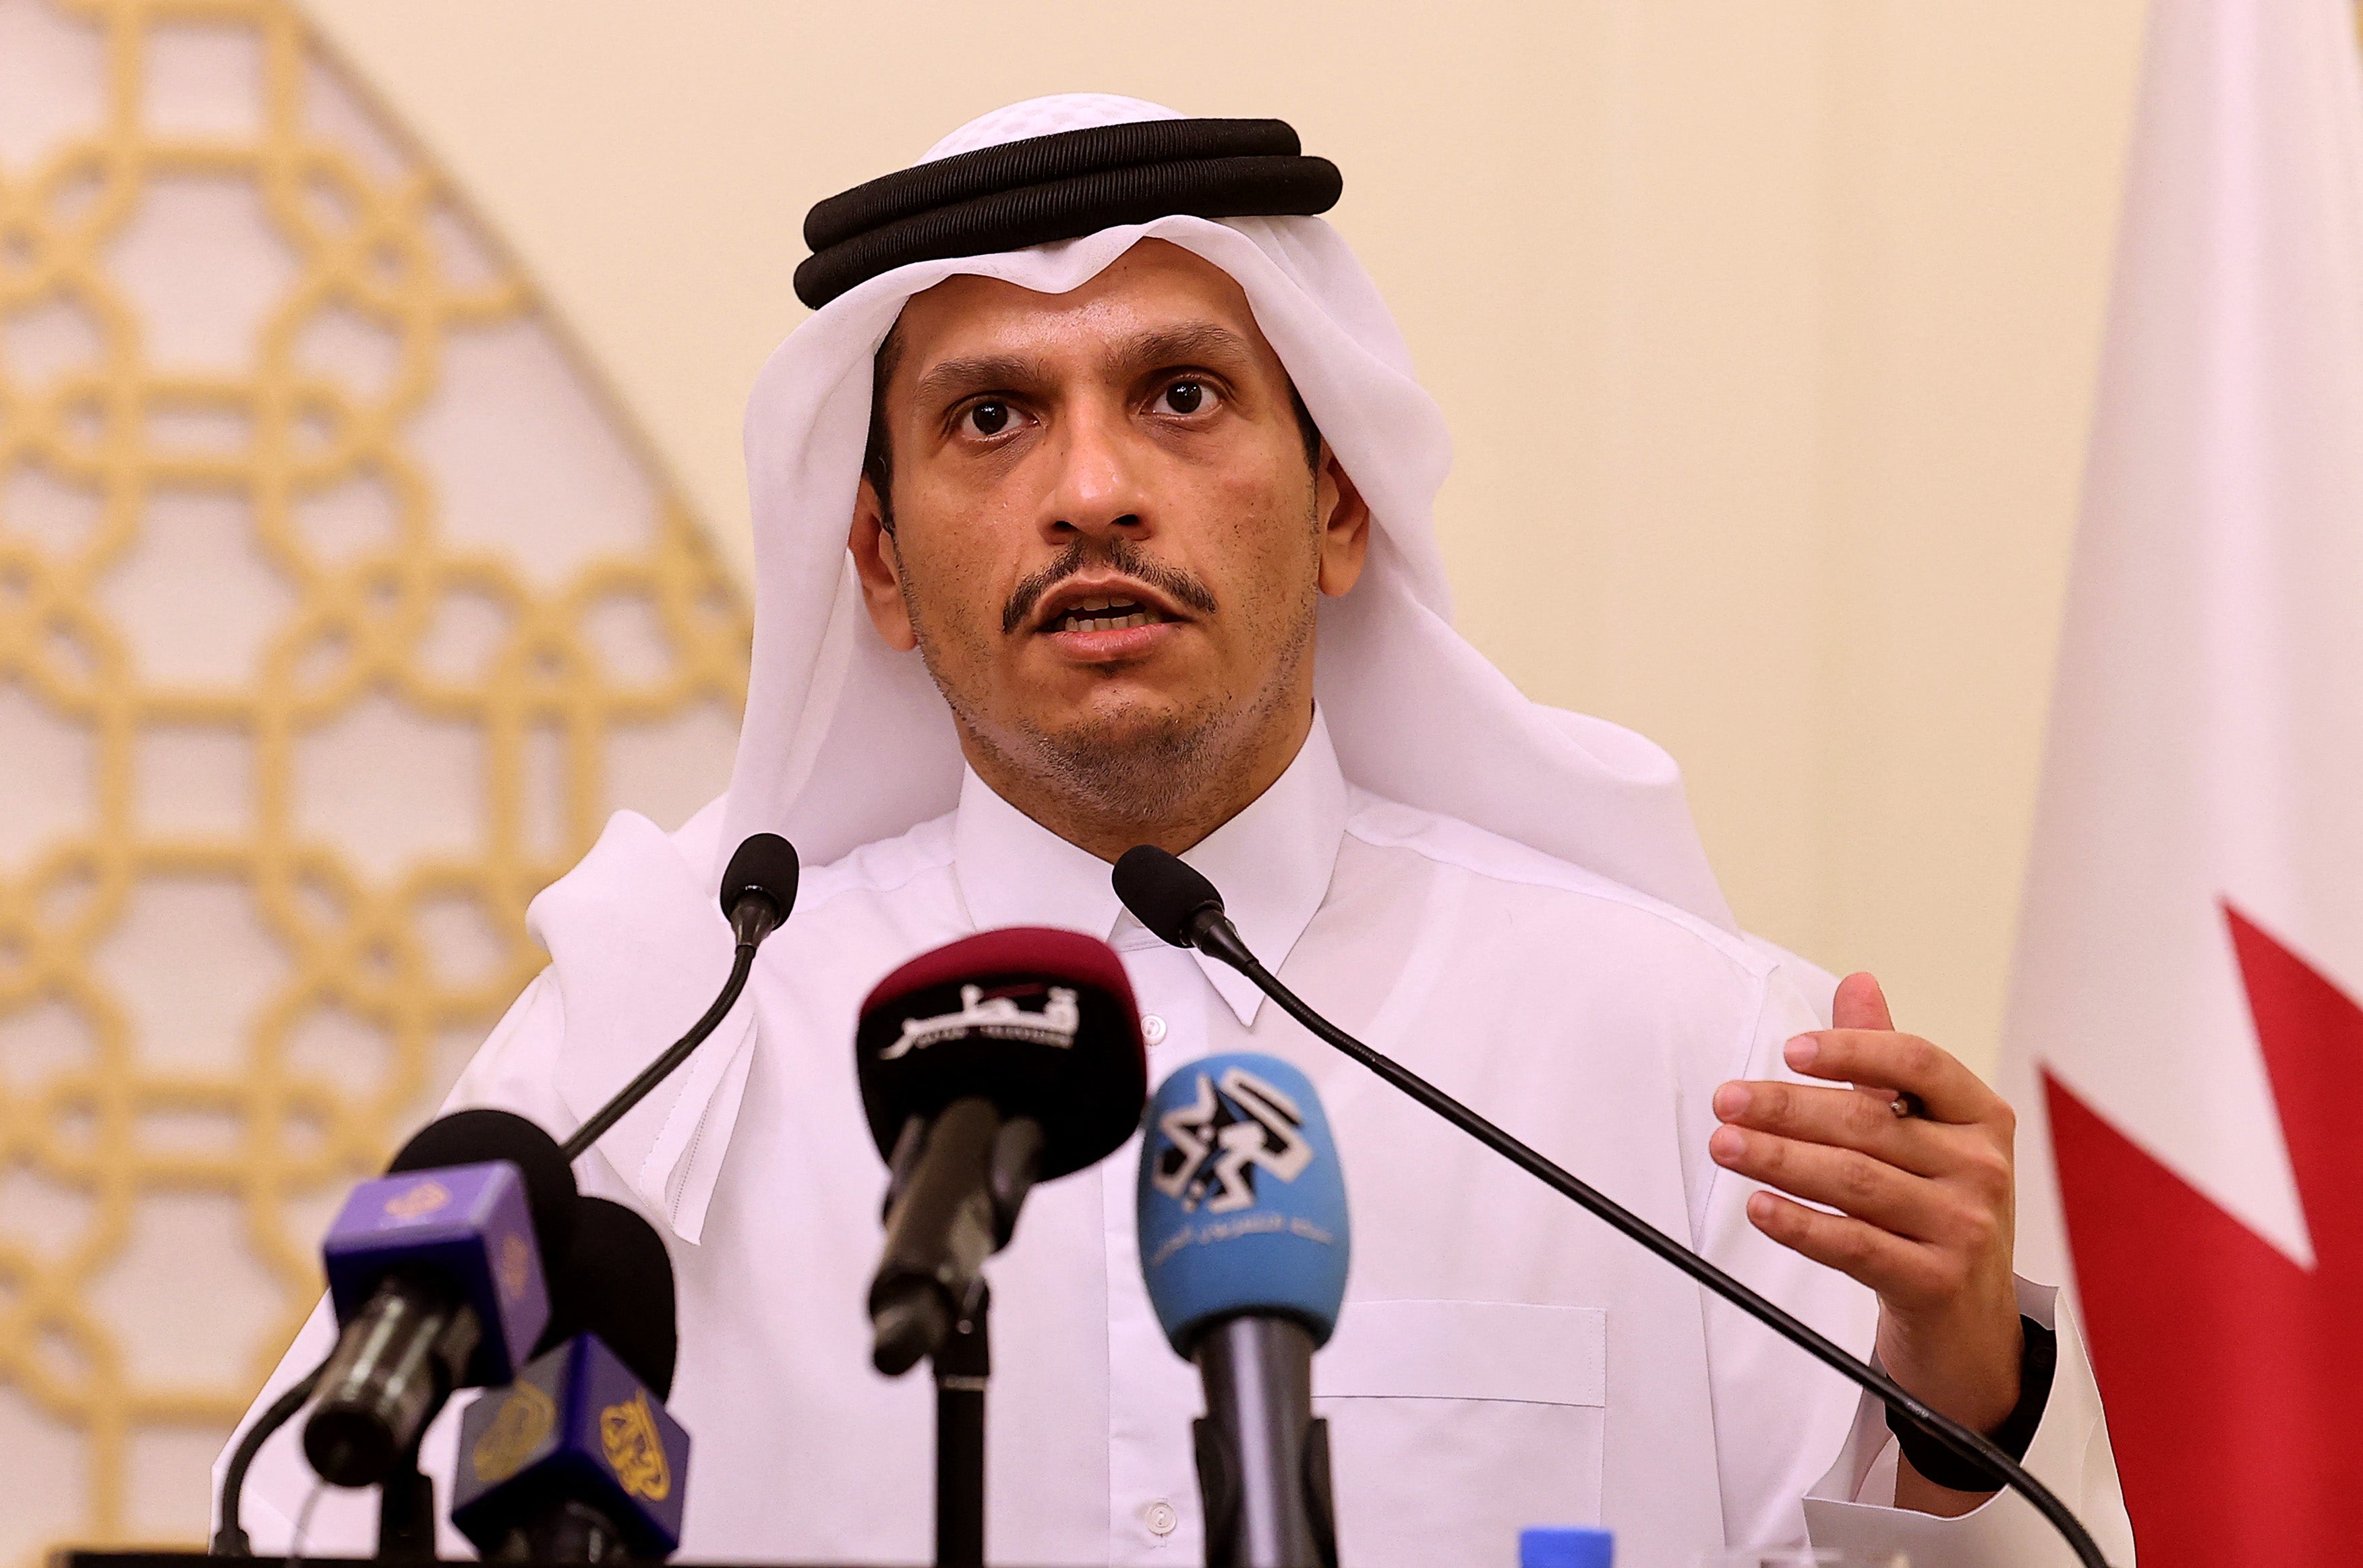 Qatar’s foreign minister, Sheikh Mohammed bin Abdulrahman al-Thani